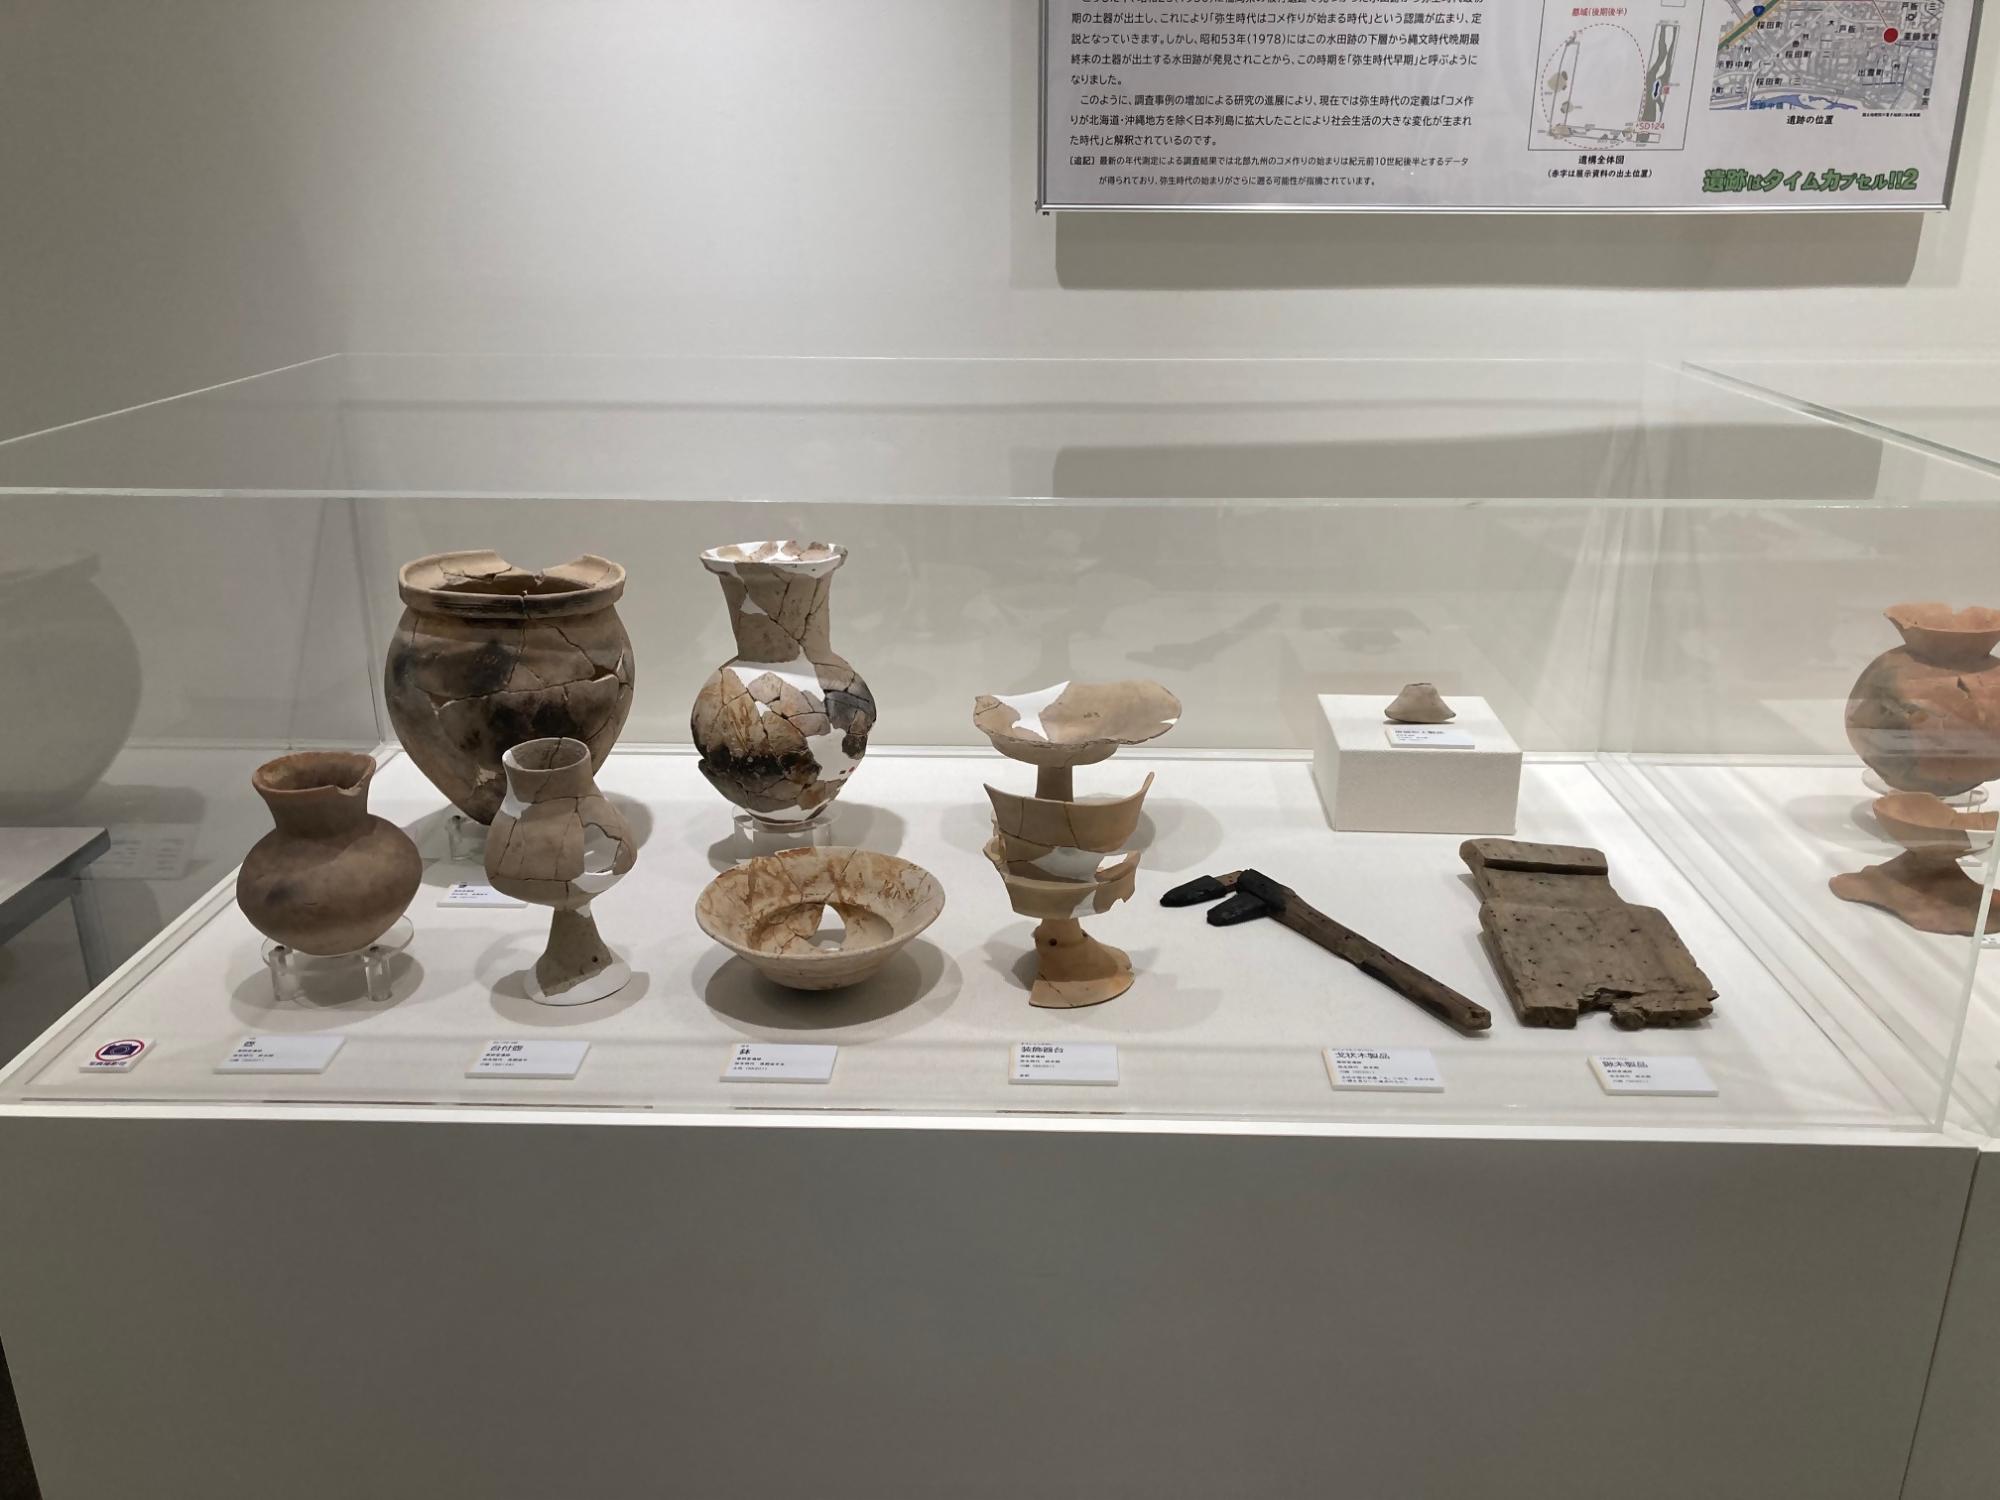 弥生時代の土器や木製品が展示台に並んでいる企画展「遺跡はタイムカプセル!!2」の展示風景